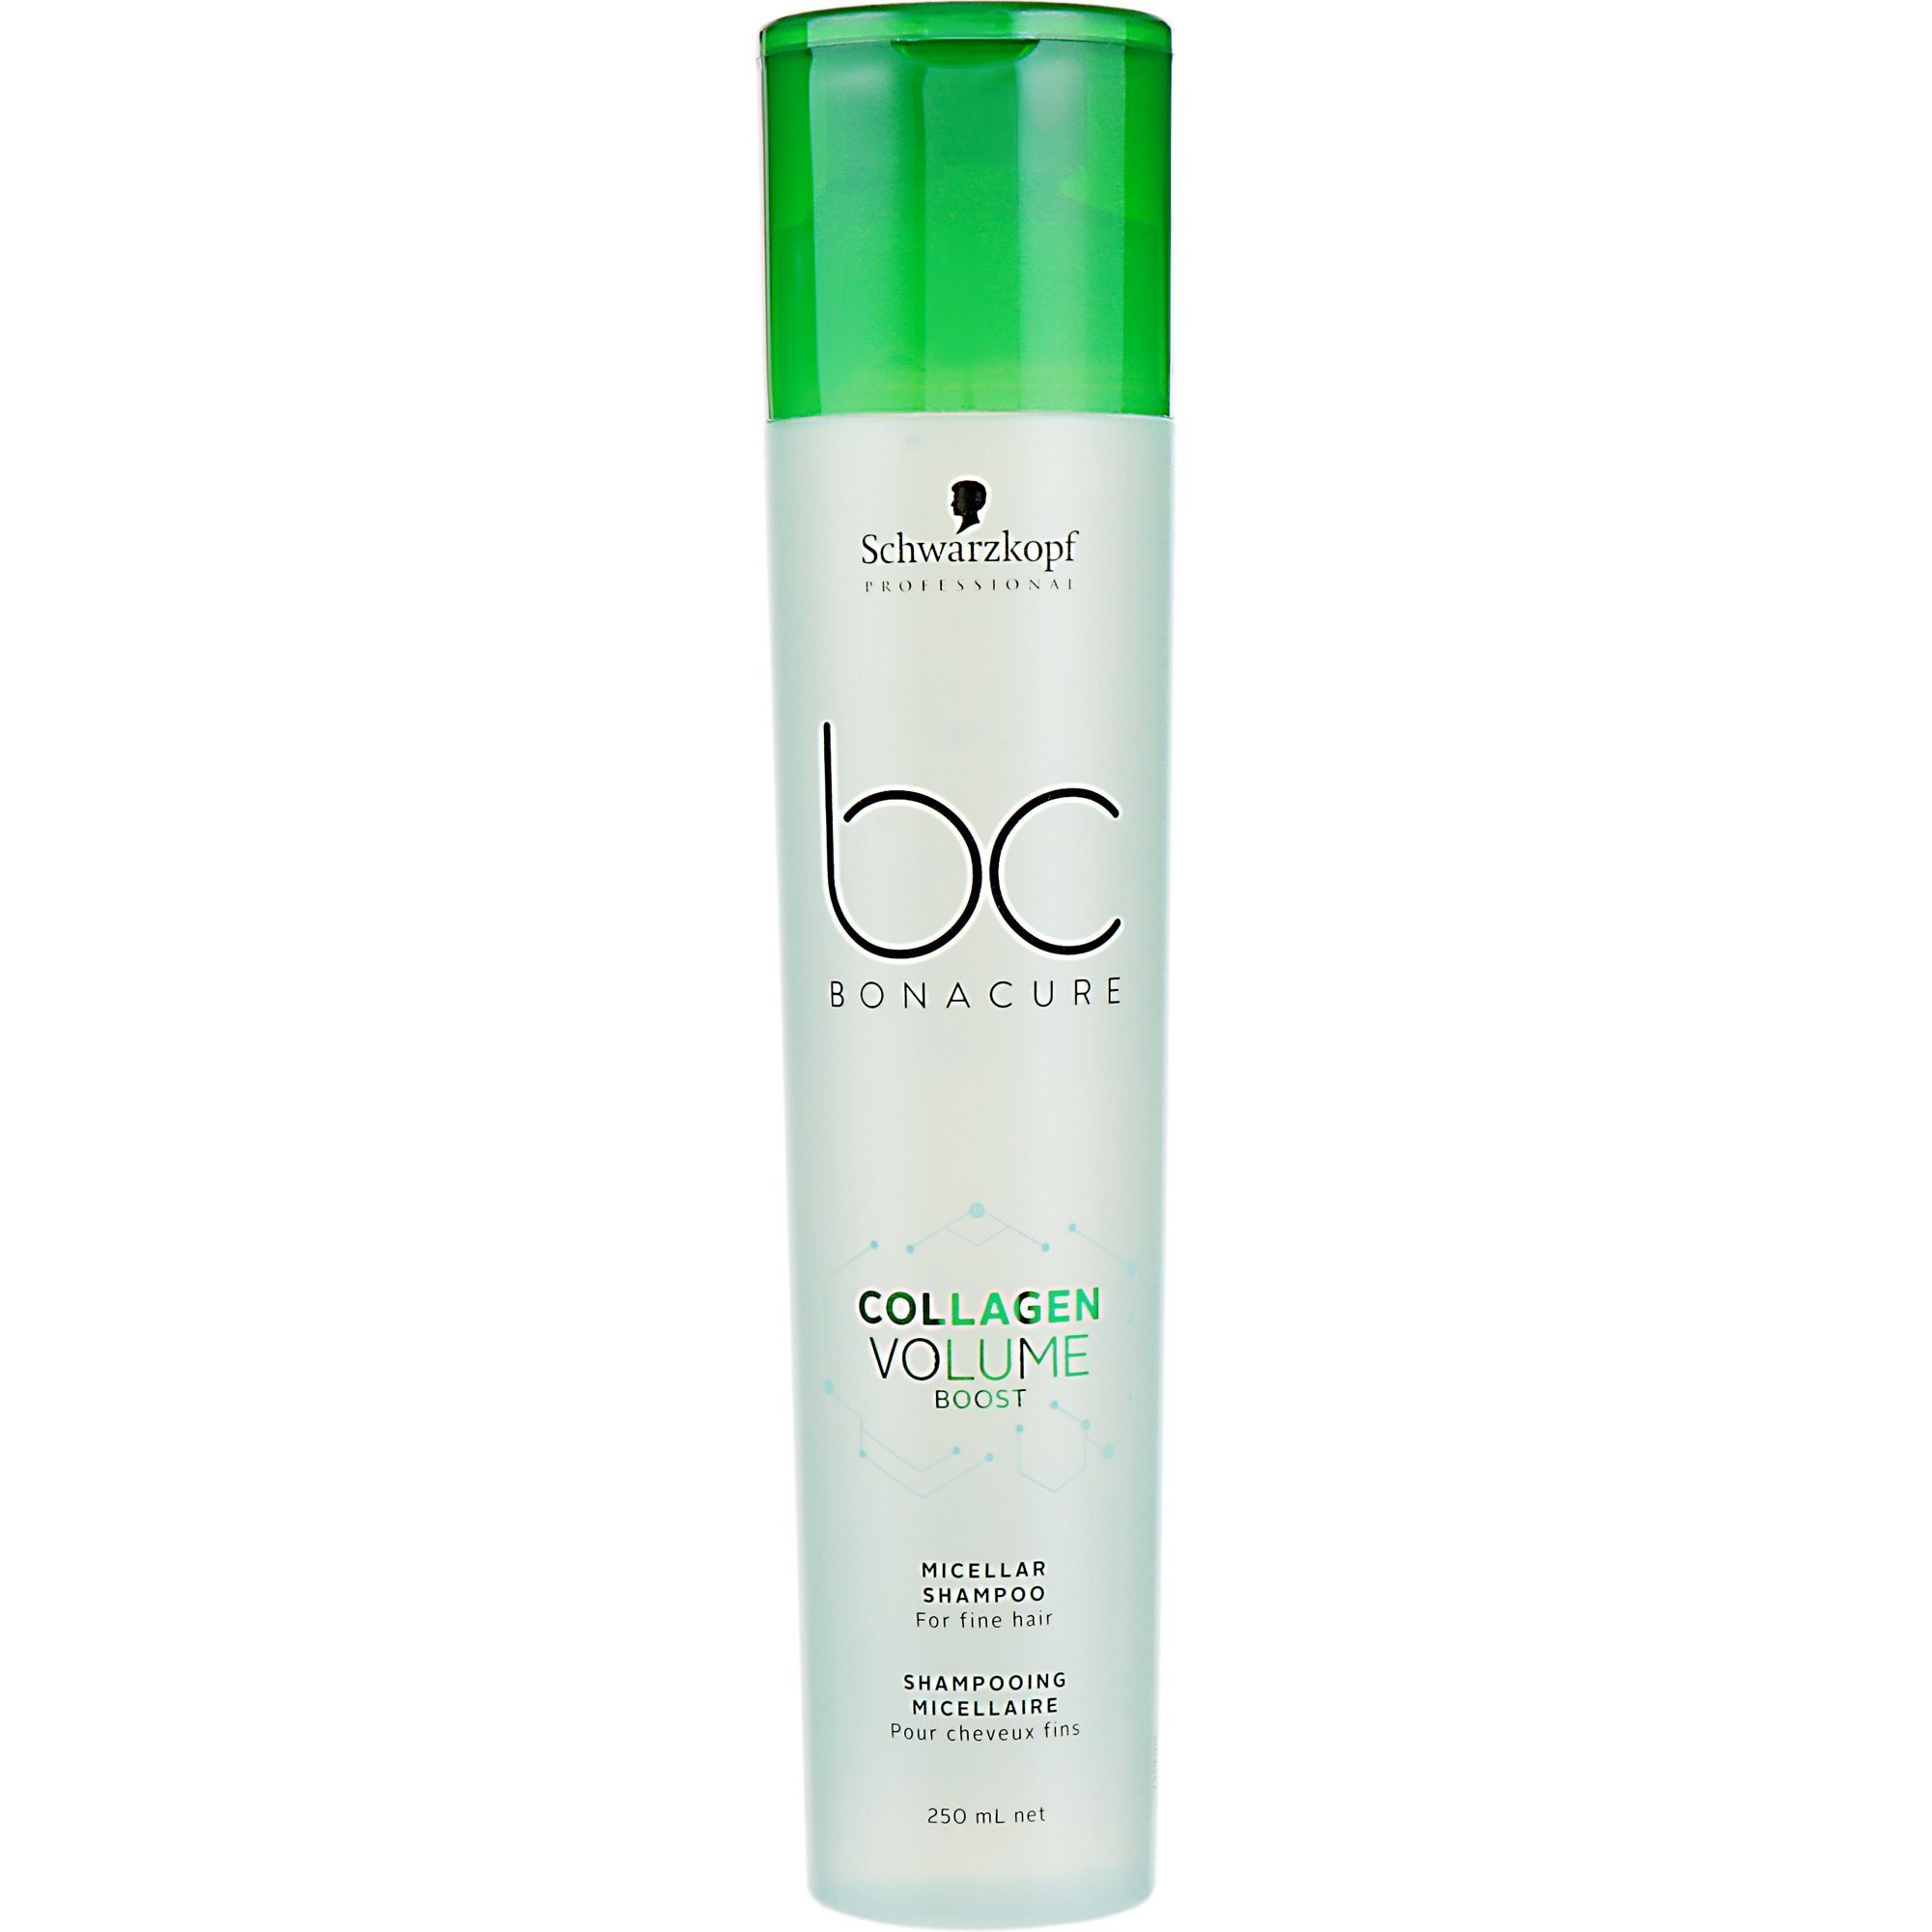 Міцелярний шампунь для об'єму волосся Bonacure Collagen Volume 250 млфото1